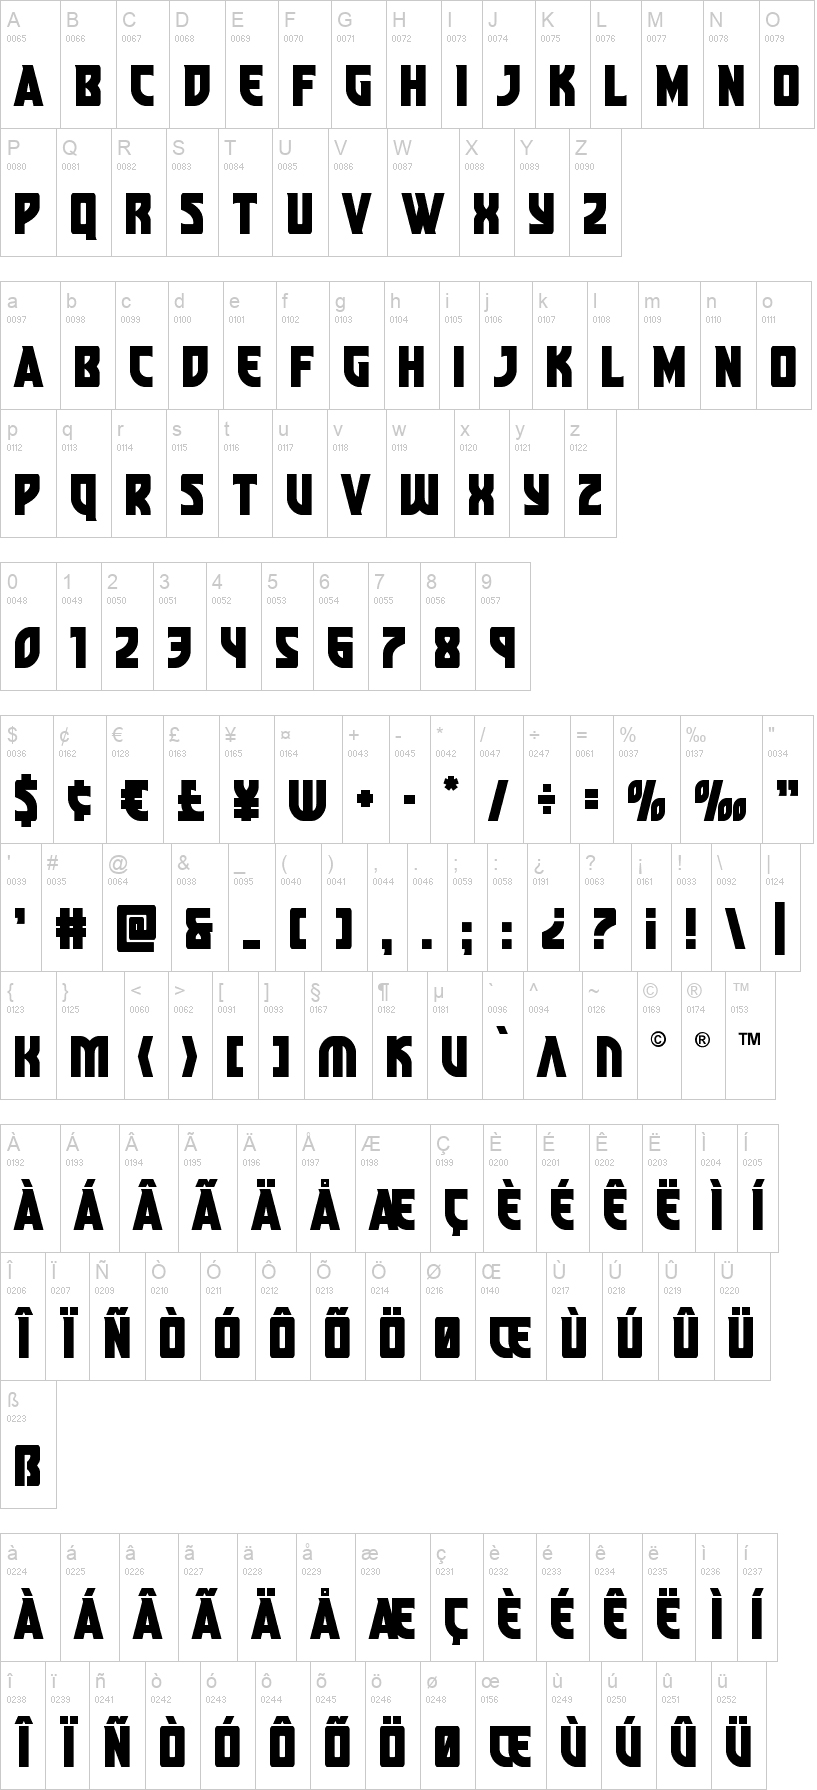 tipografia shang chi abecedario alfabeto